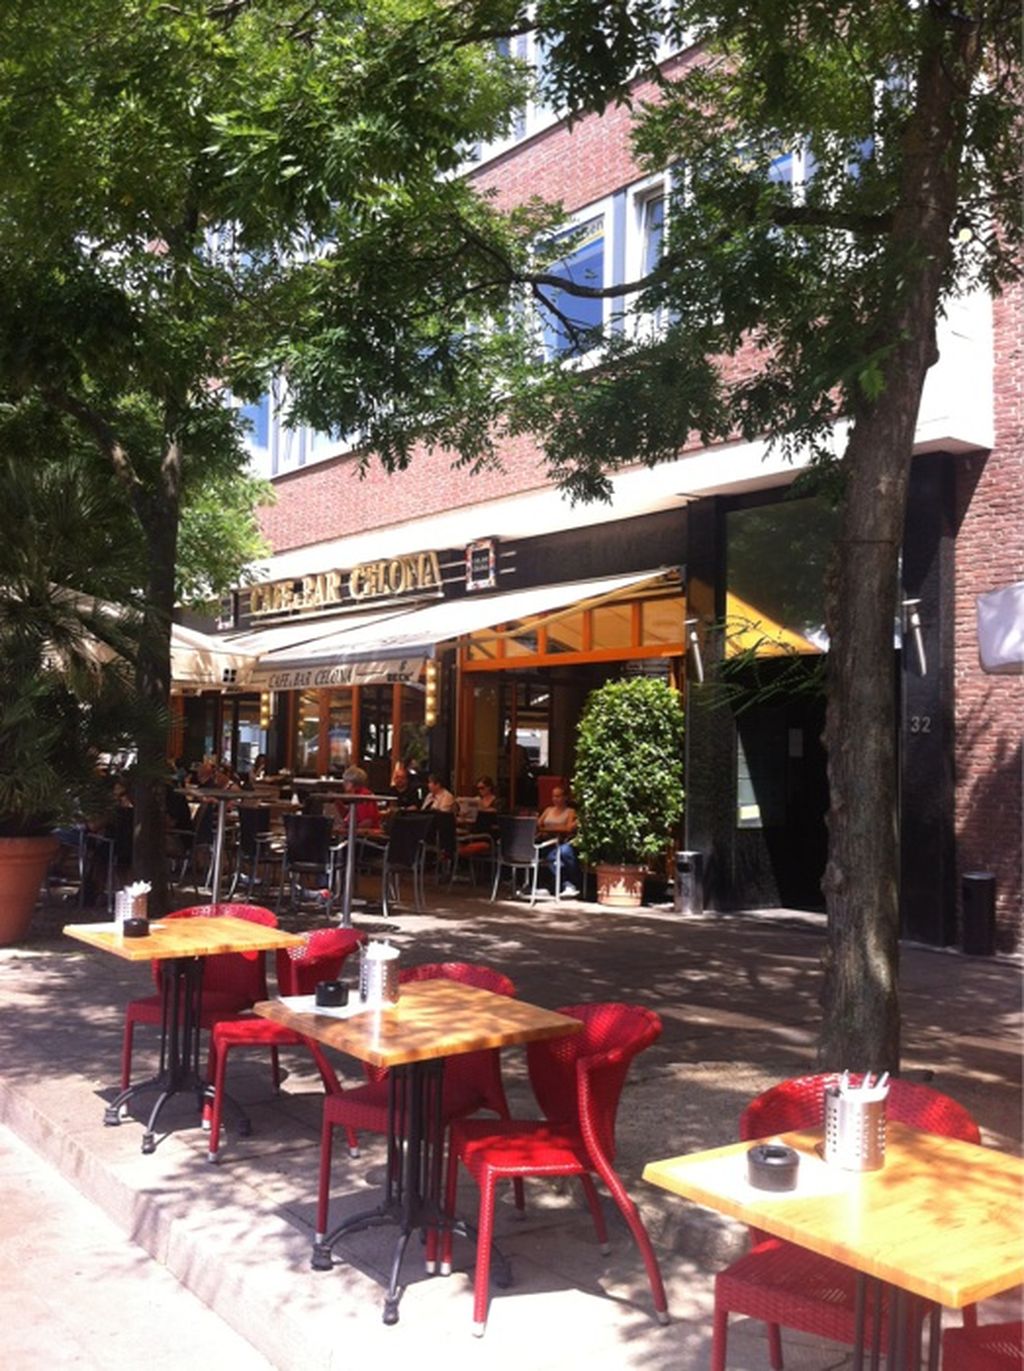 Nutzerfoto 14 Cafe & Bar Celona, Celona Bremen